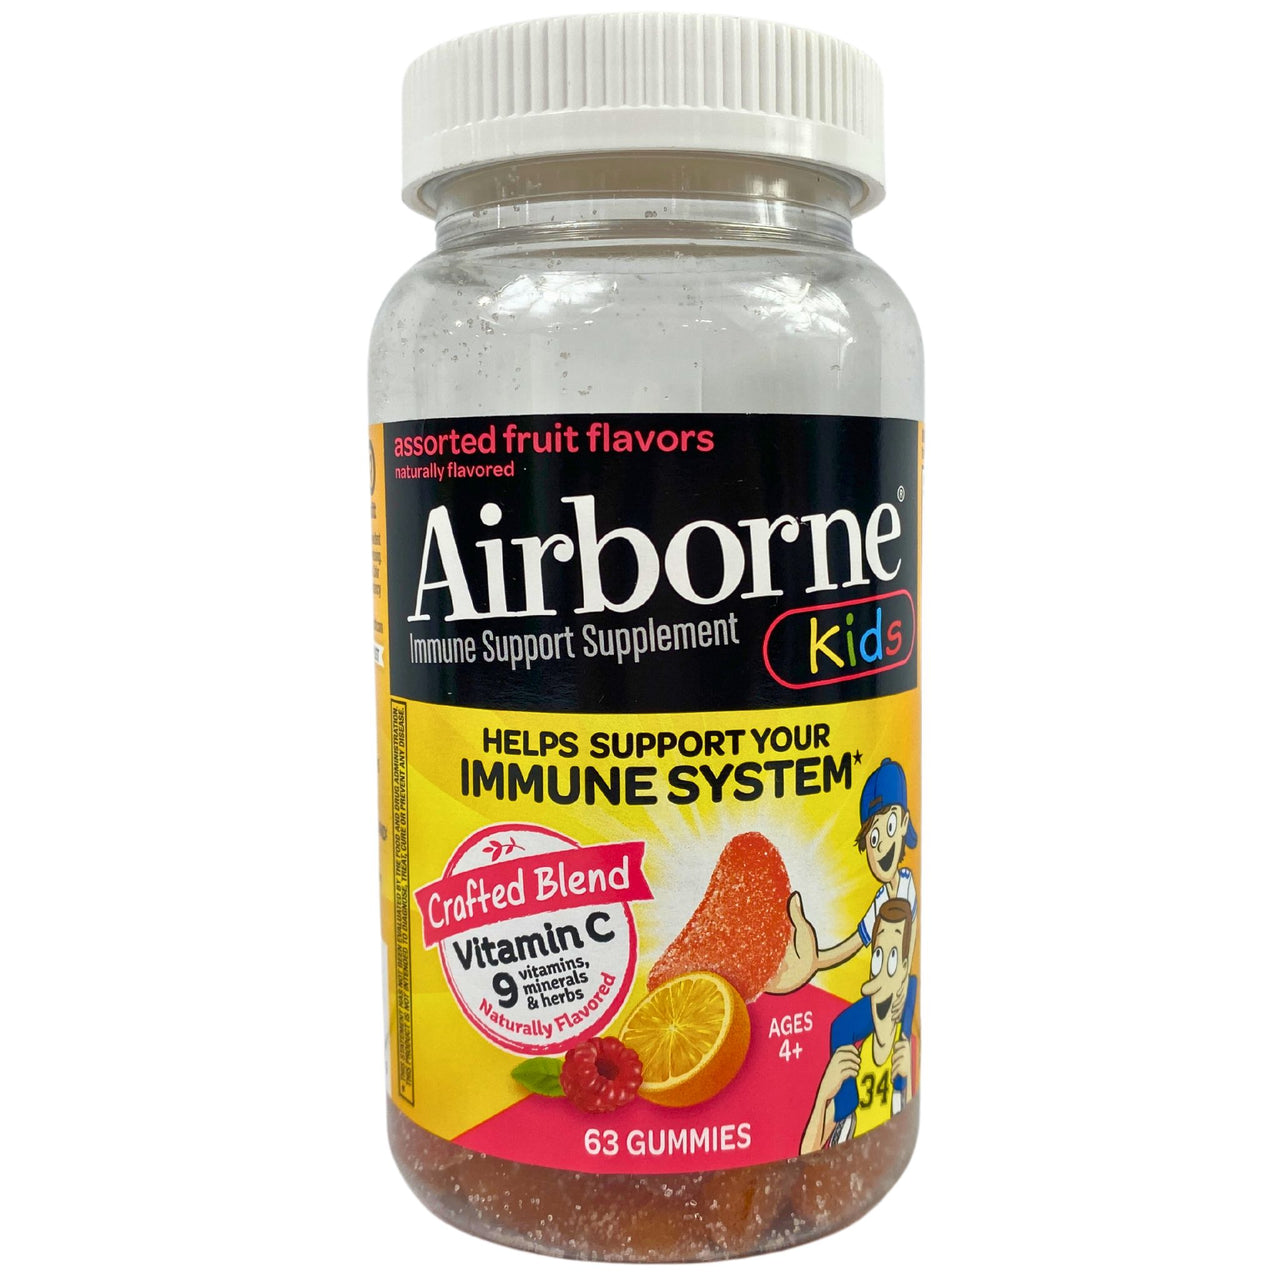 Airborne Kids Immune Support Supplement 